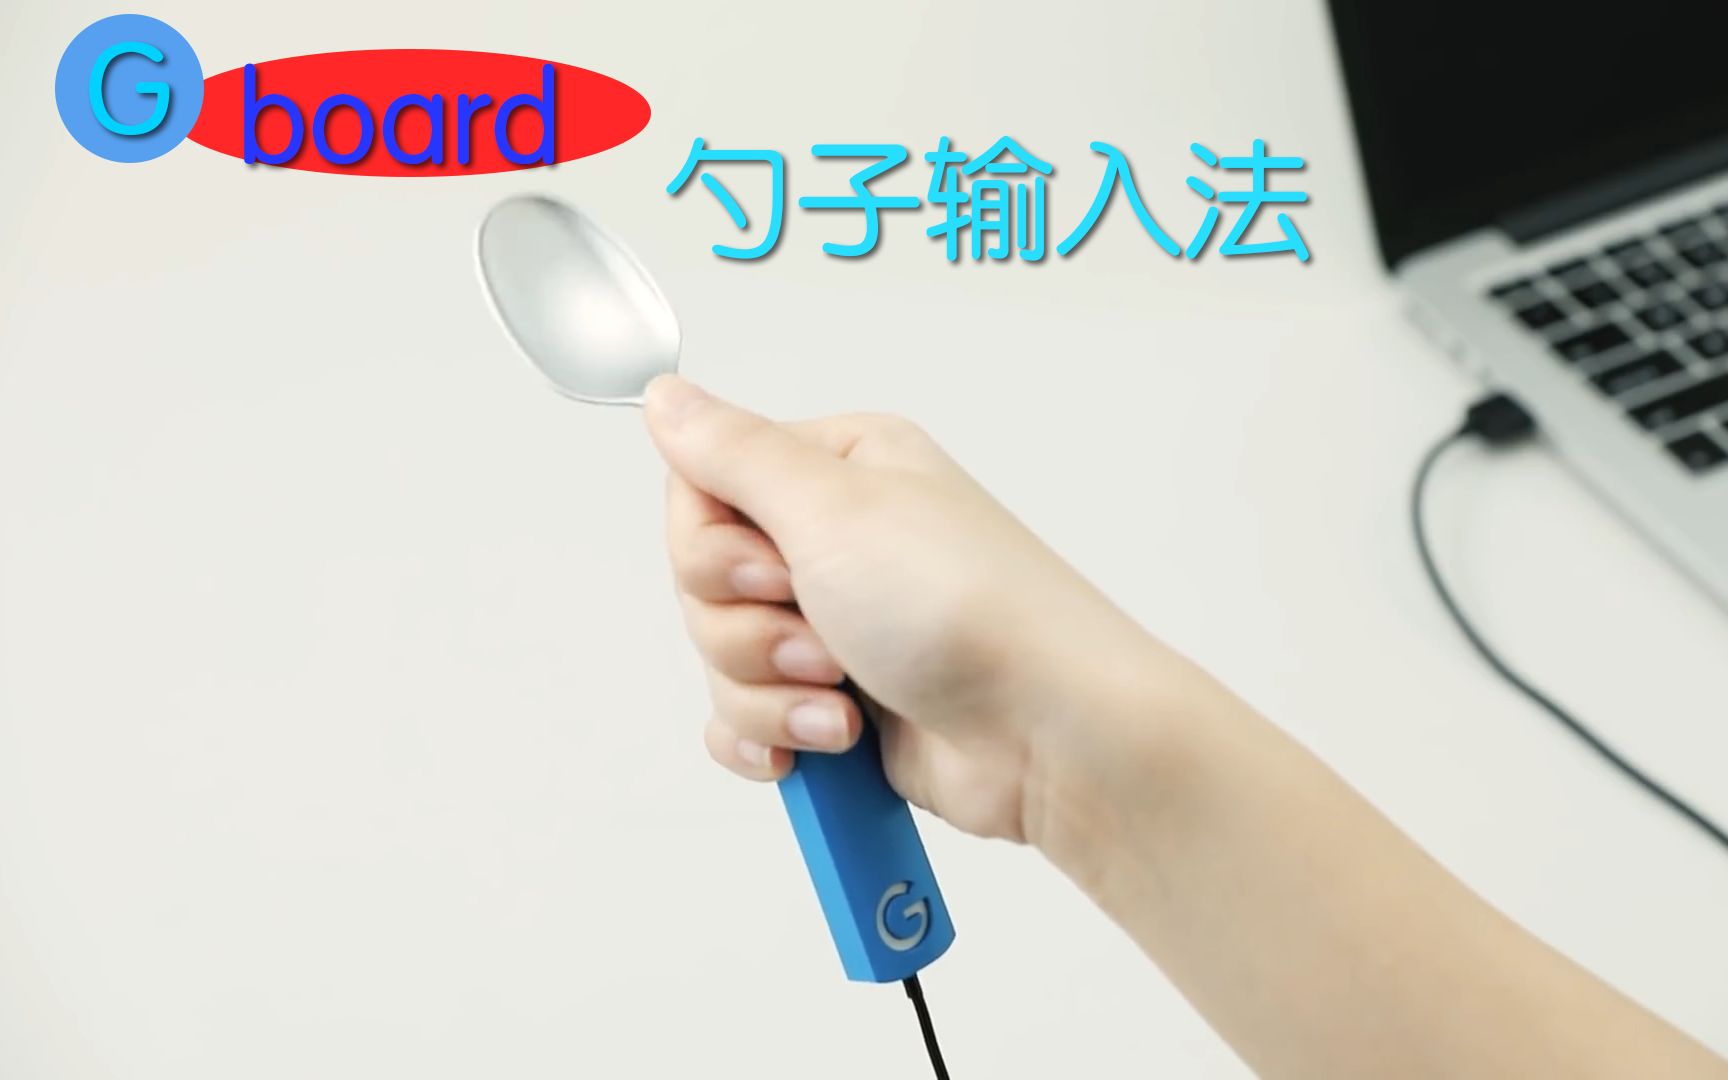 日本谷歌沙雕产品 |Gboard 勺子键盘|